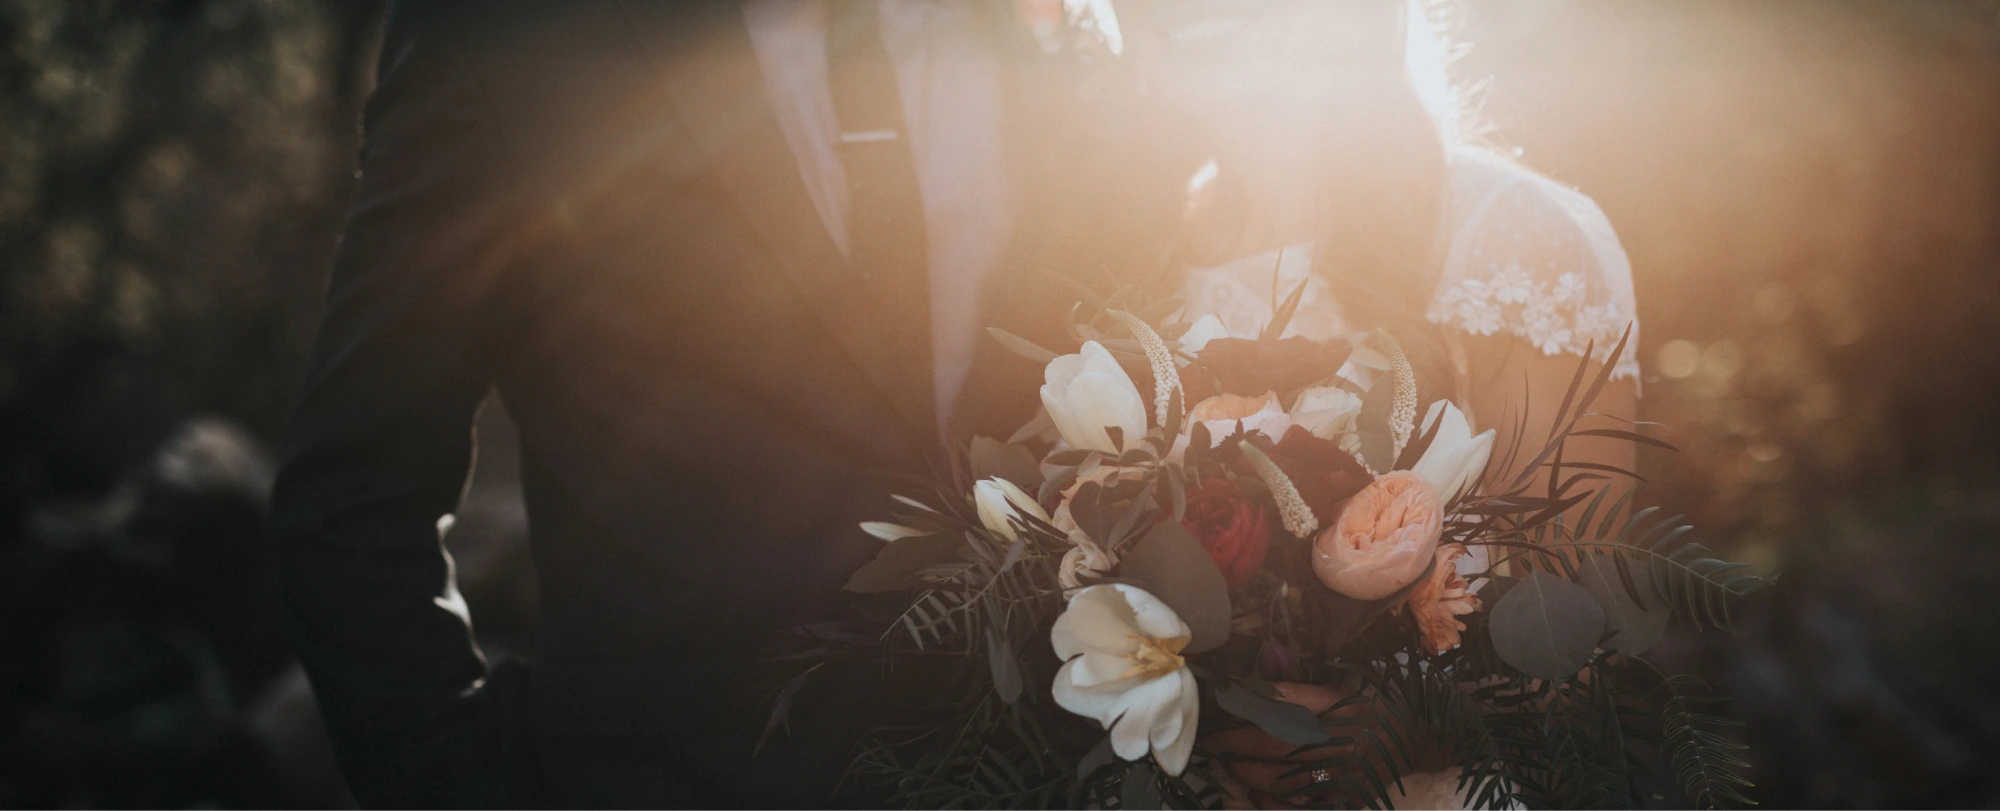 Paare, die heiraten, posieren zu einem Hochzeitsfoto mit einem Blumenstrauß